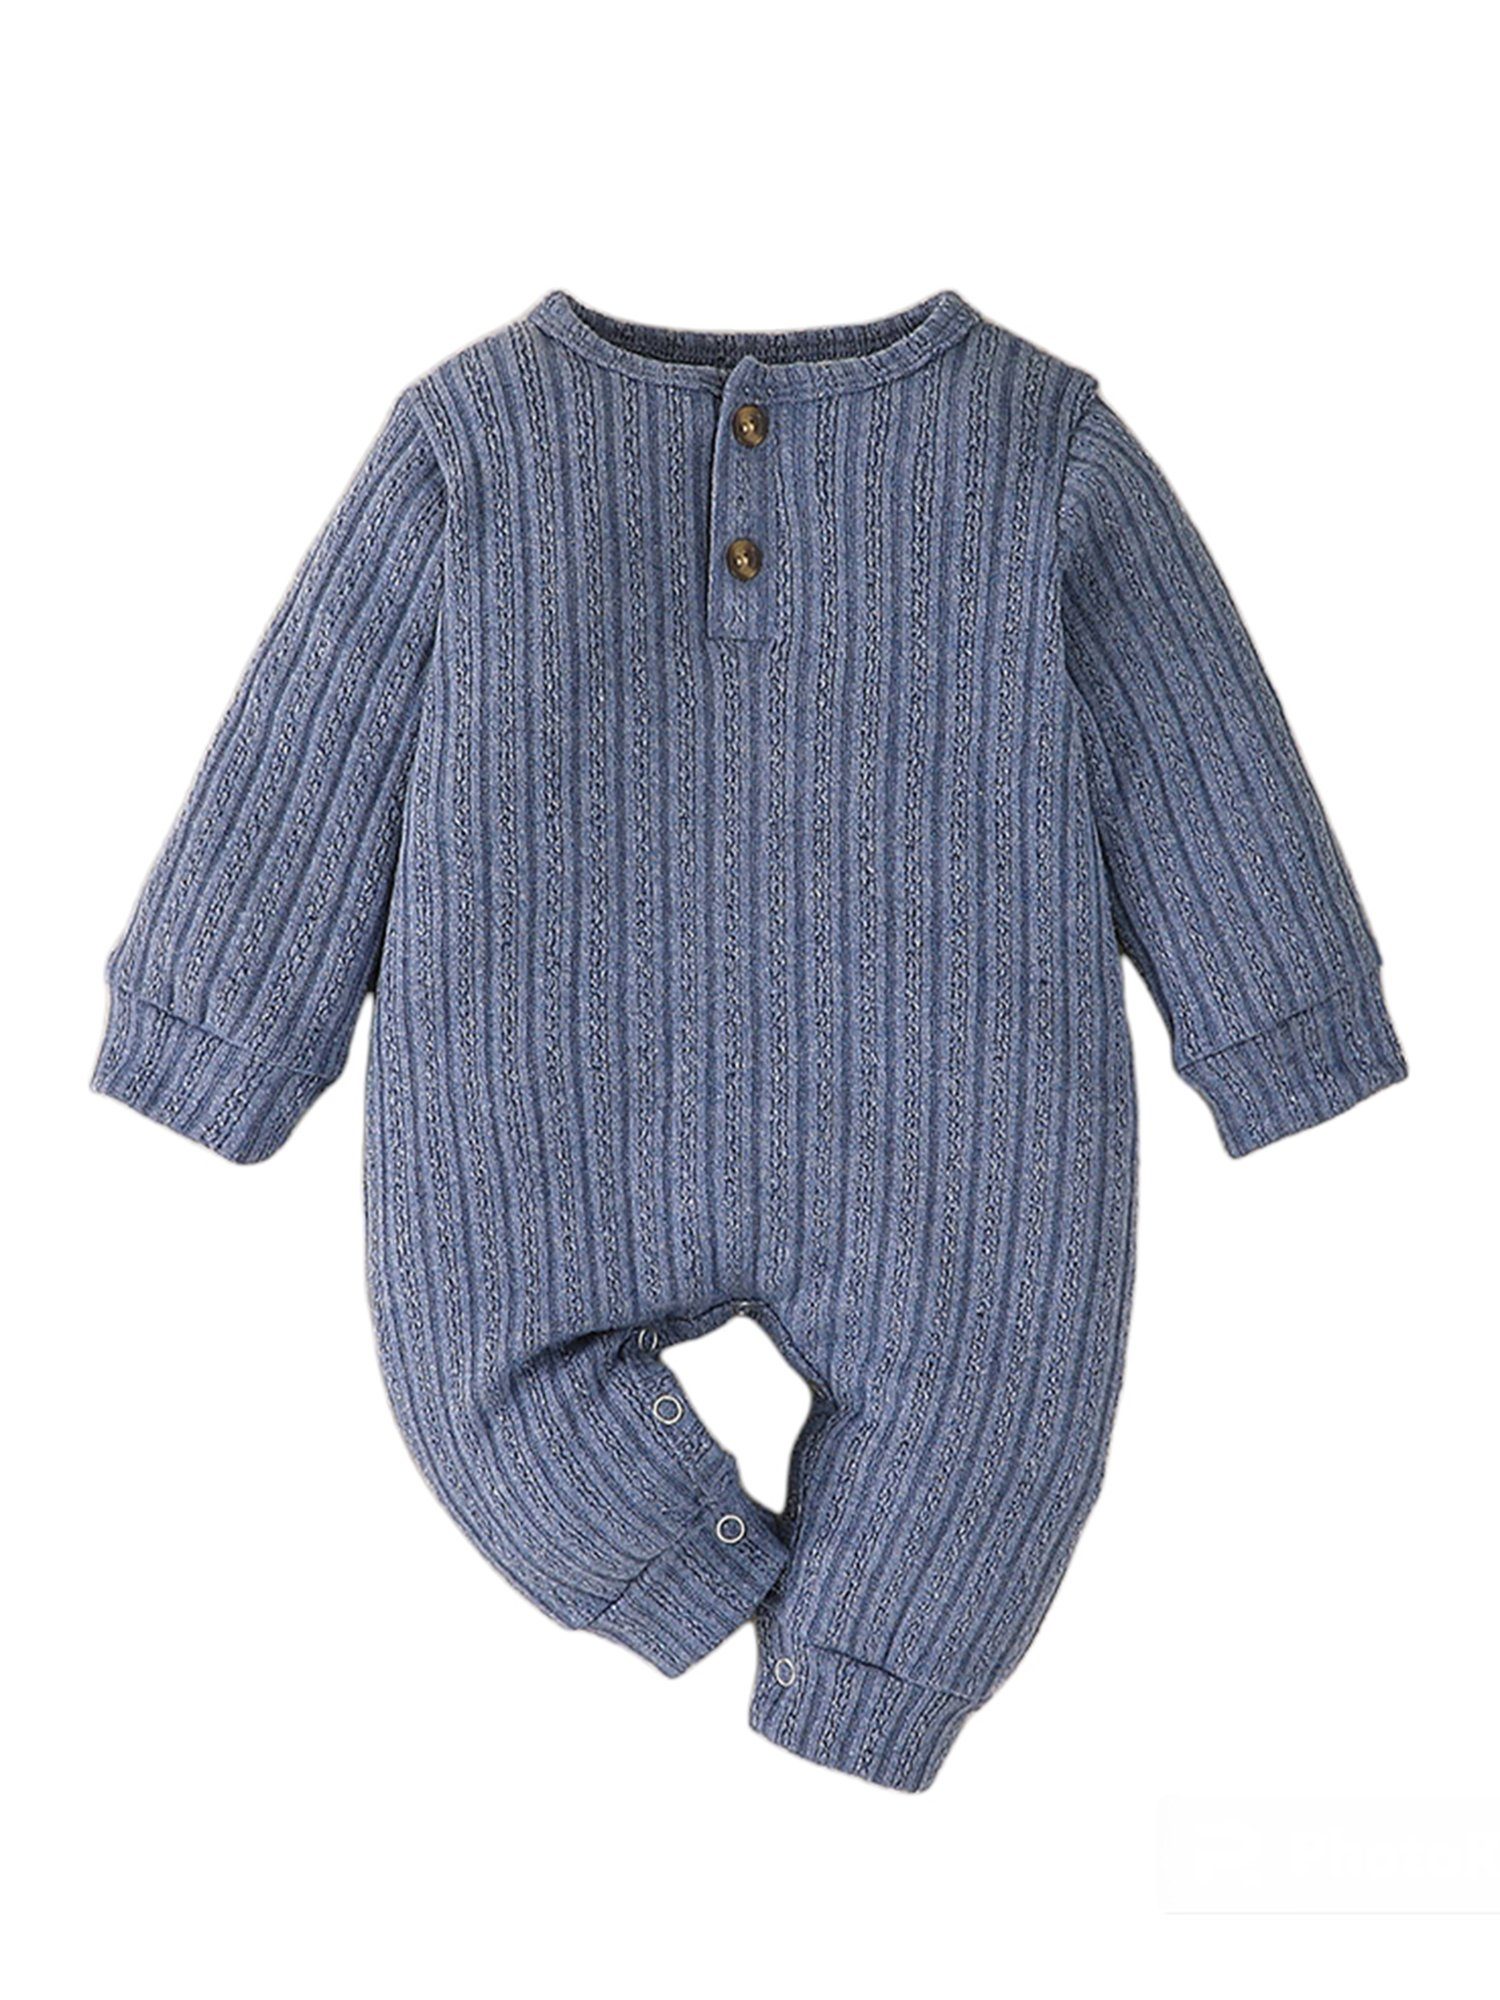 Lapastyle Strampler Einfarbiger langärmliger Strampler mit Knopfverschluss für Unisex Baby Jersey Anzug Tiefes Blau